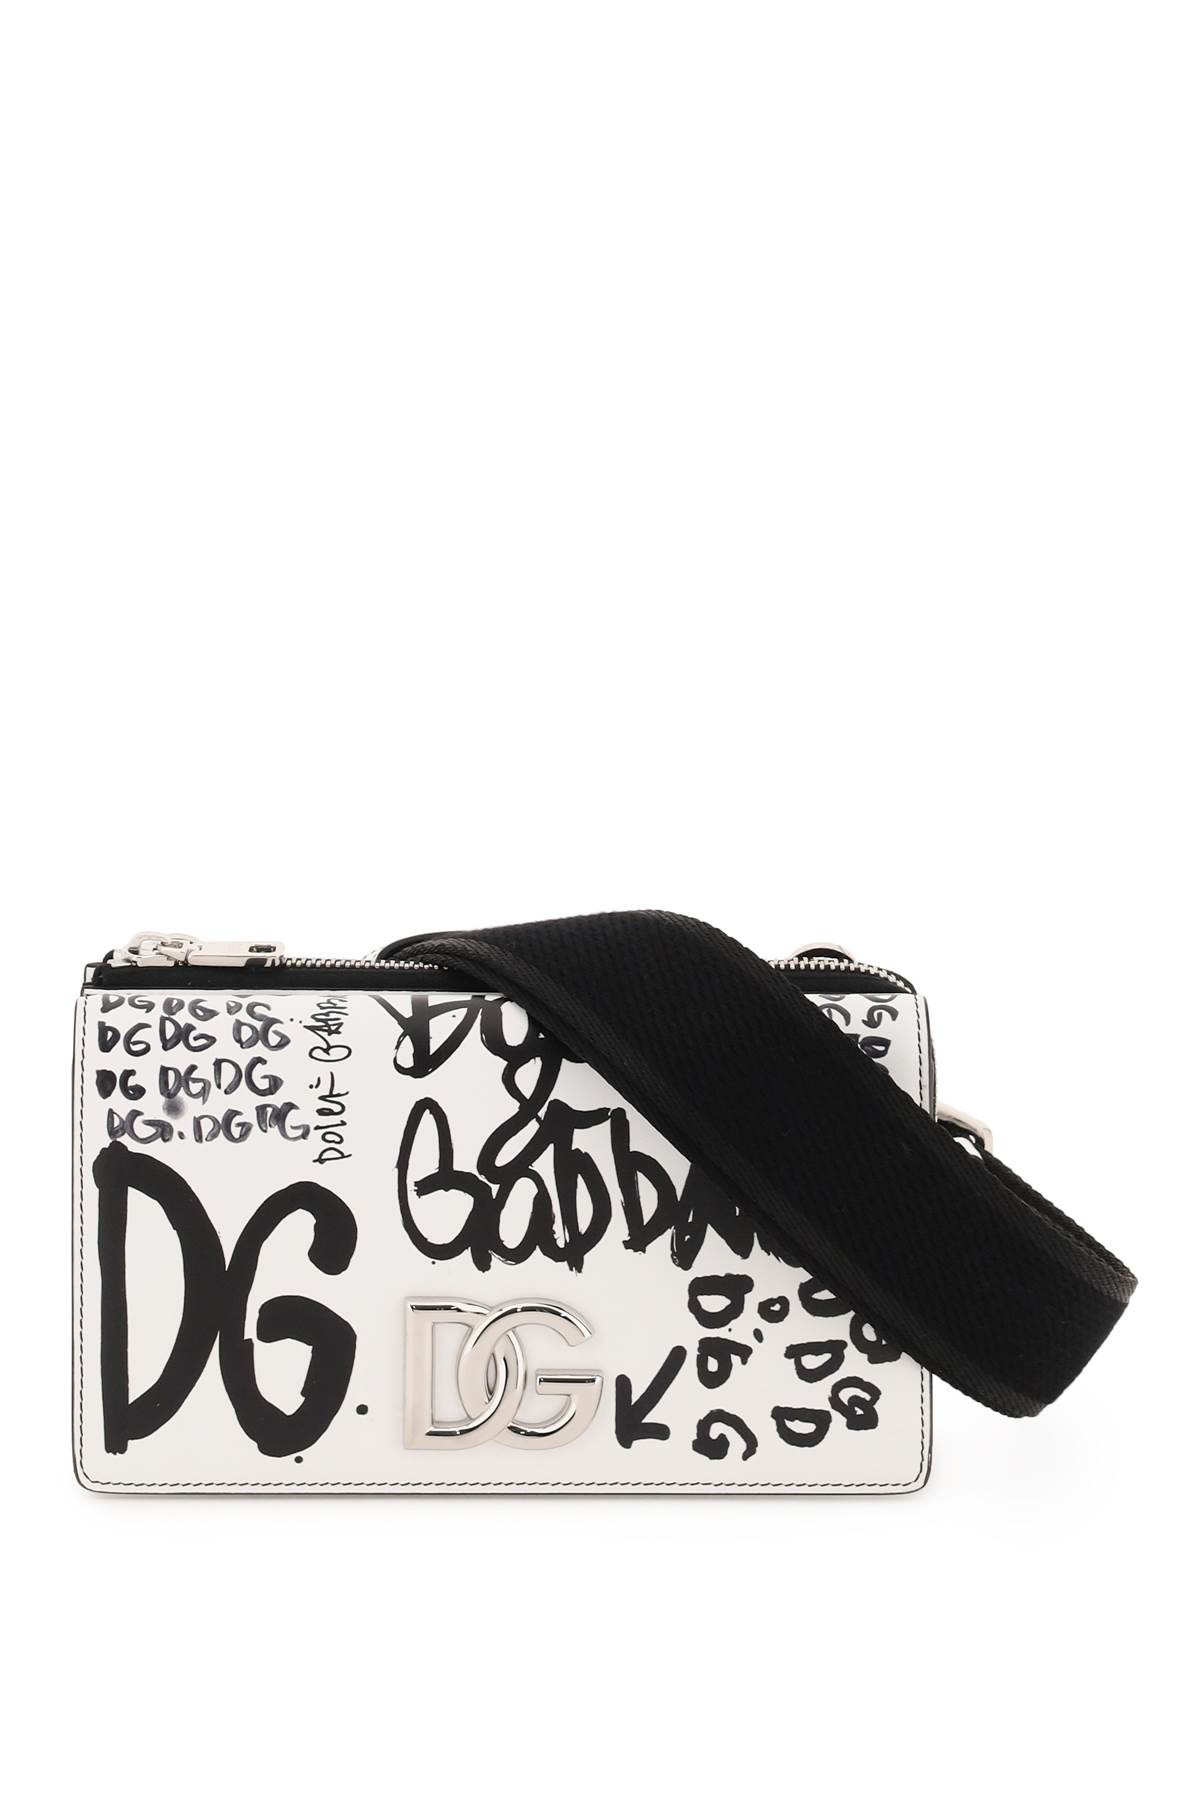 Dolce & Gabbana Graffiti Mini Bag